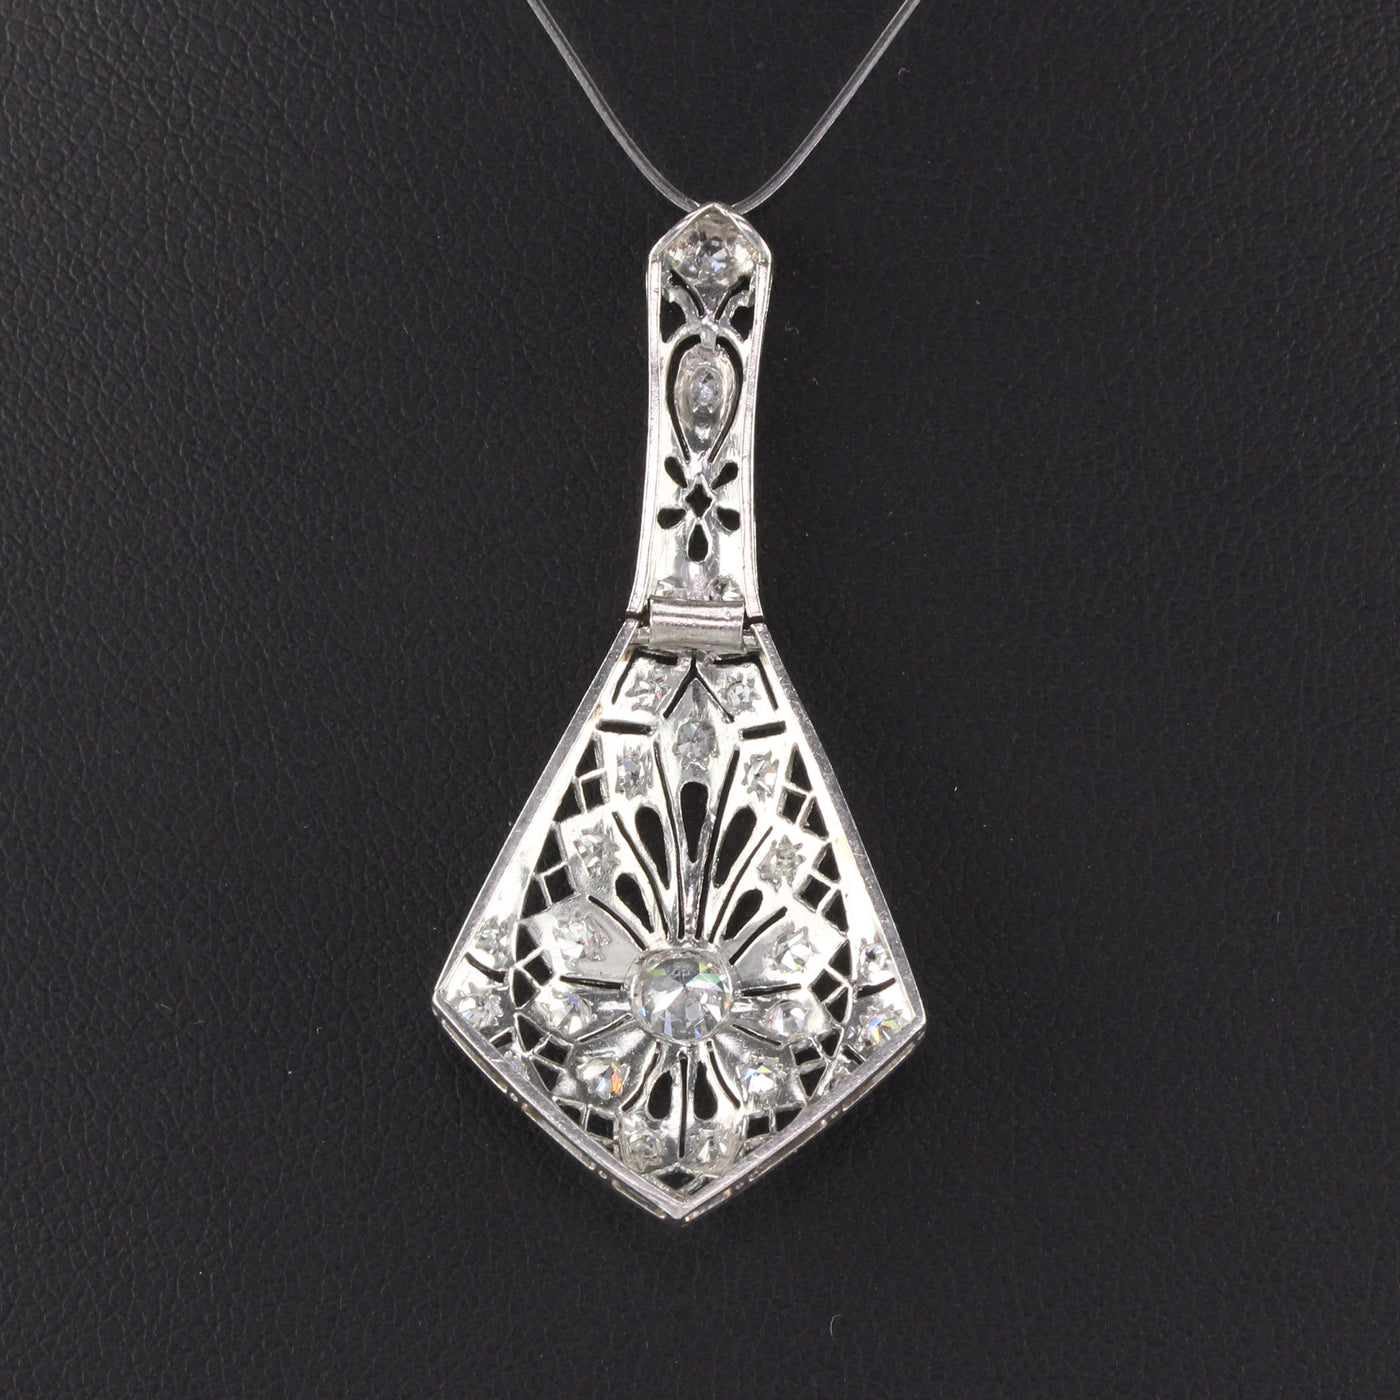 Antique Art Deco Platinum Diamond Pendant Necklace – The Antique Parlour